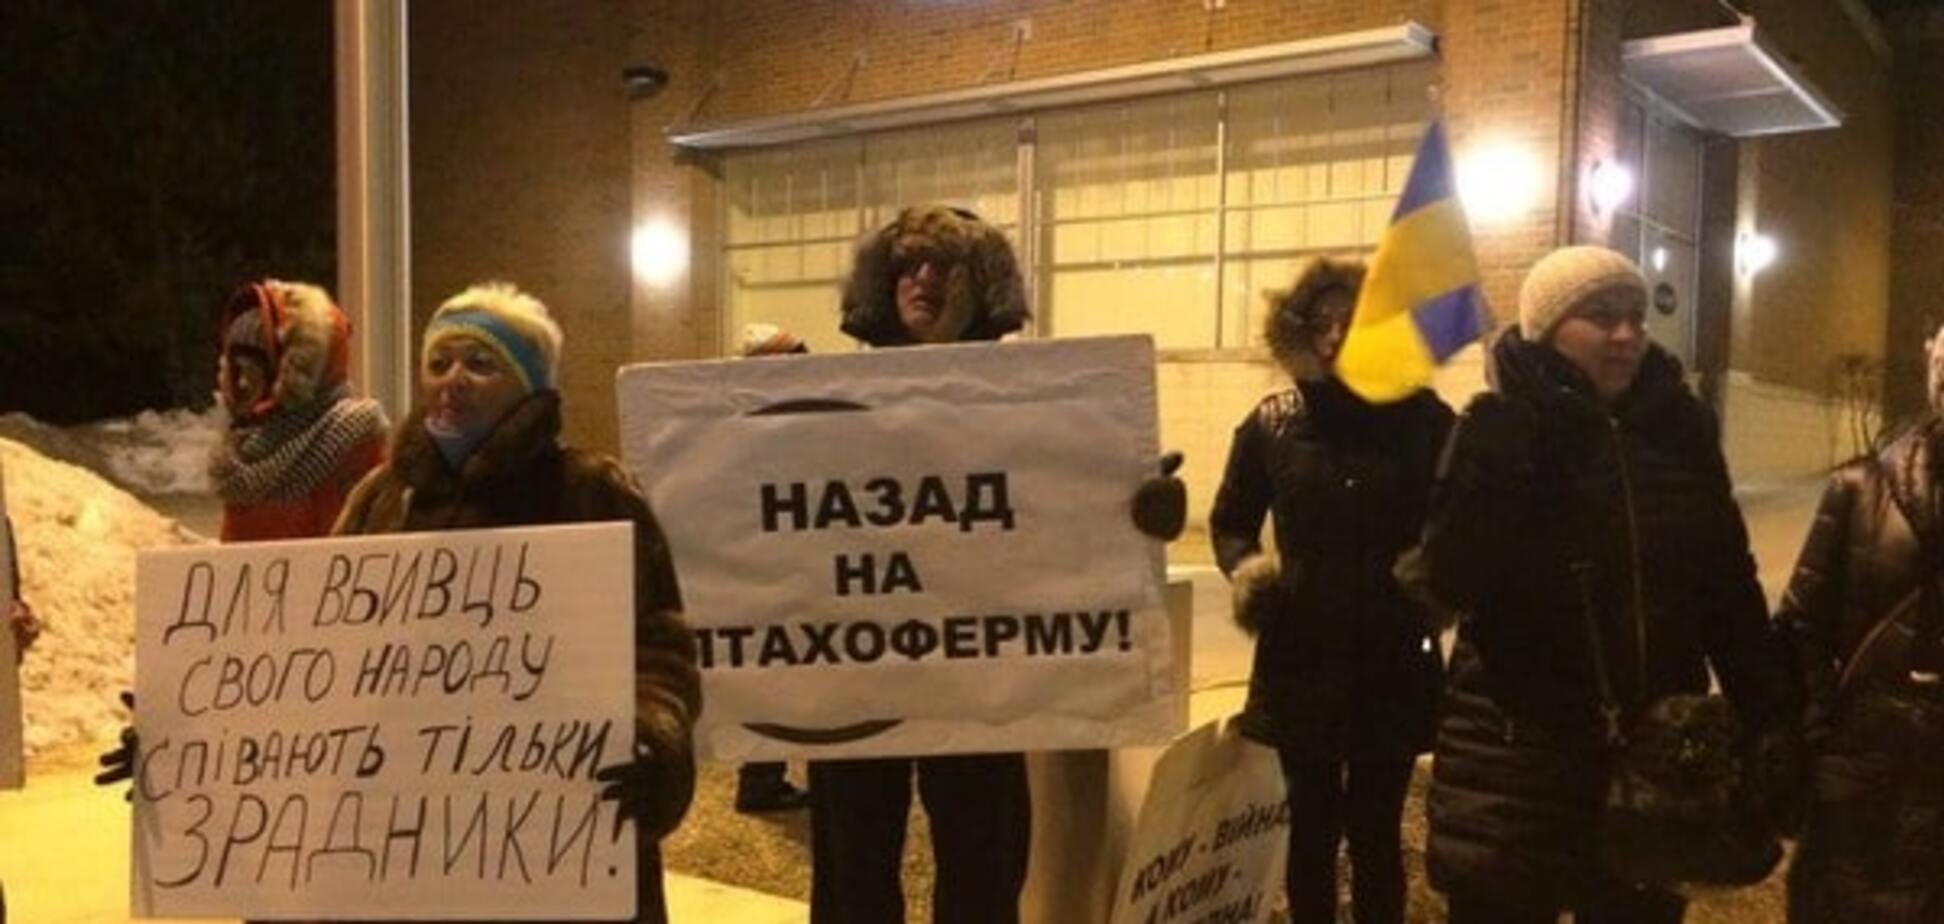 'Назад на птицеферму': украинцы бойкотировали концерт Ани Лорак в Чикаго. Фотофакт